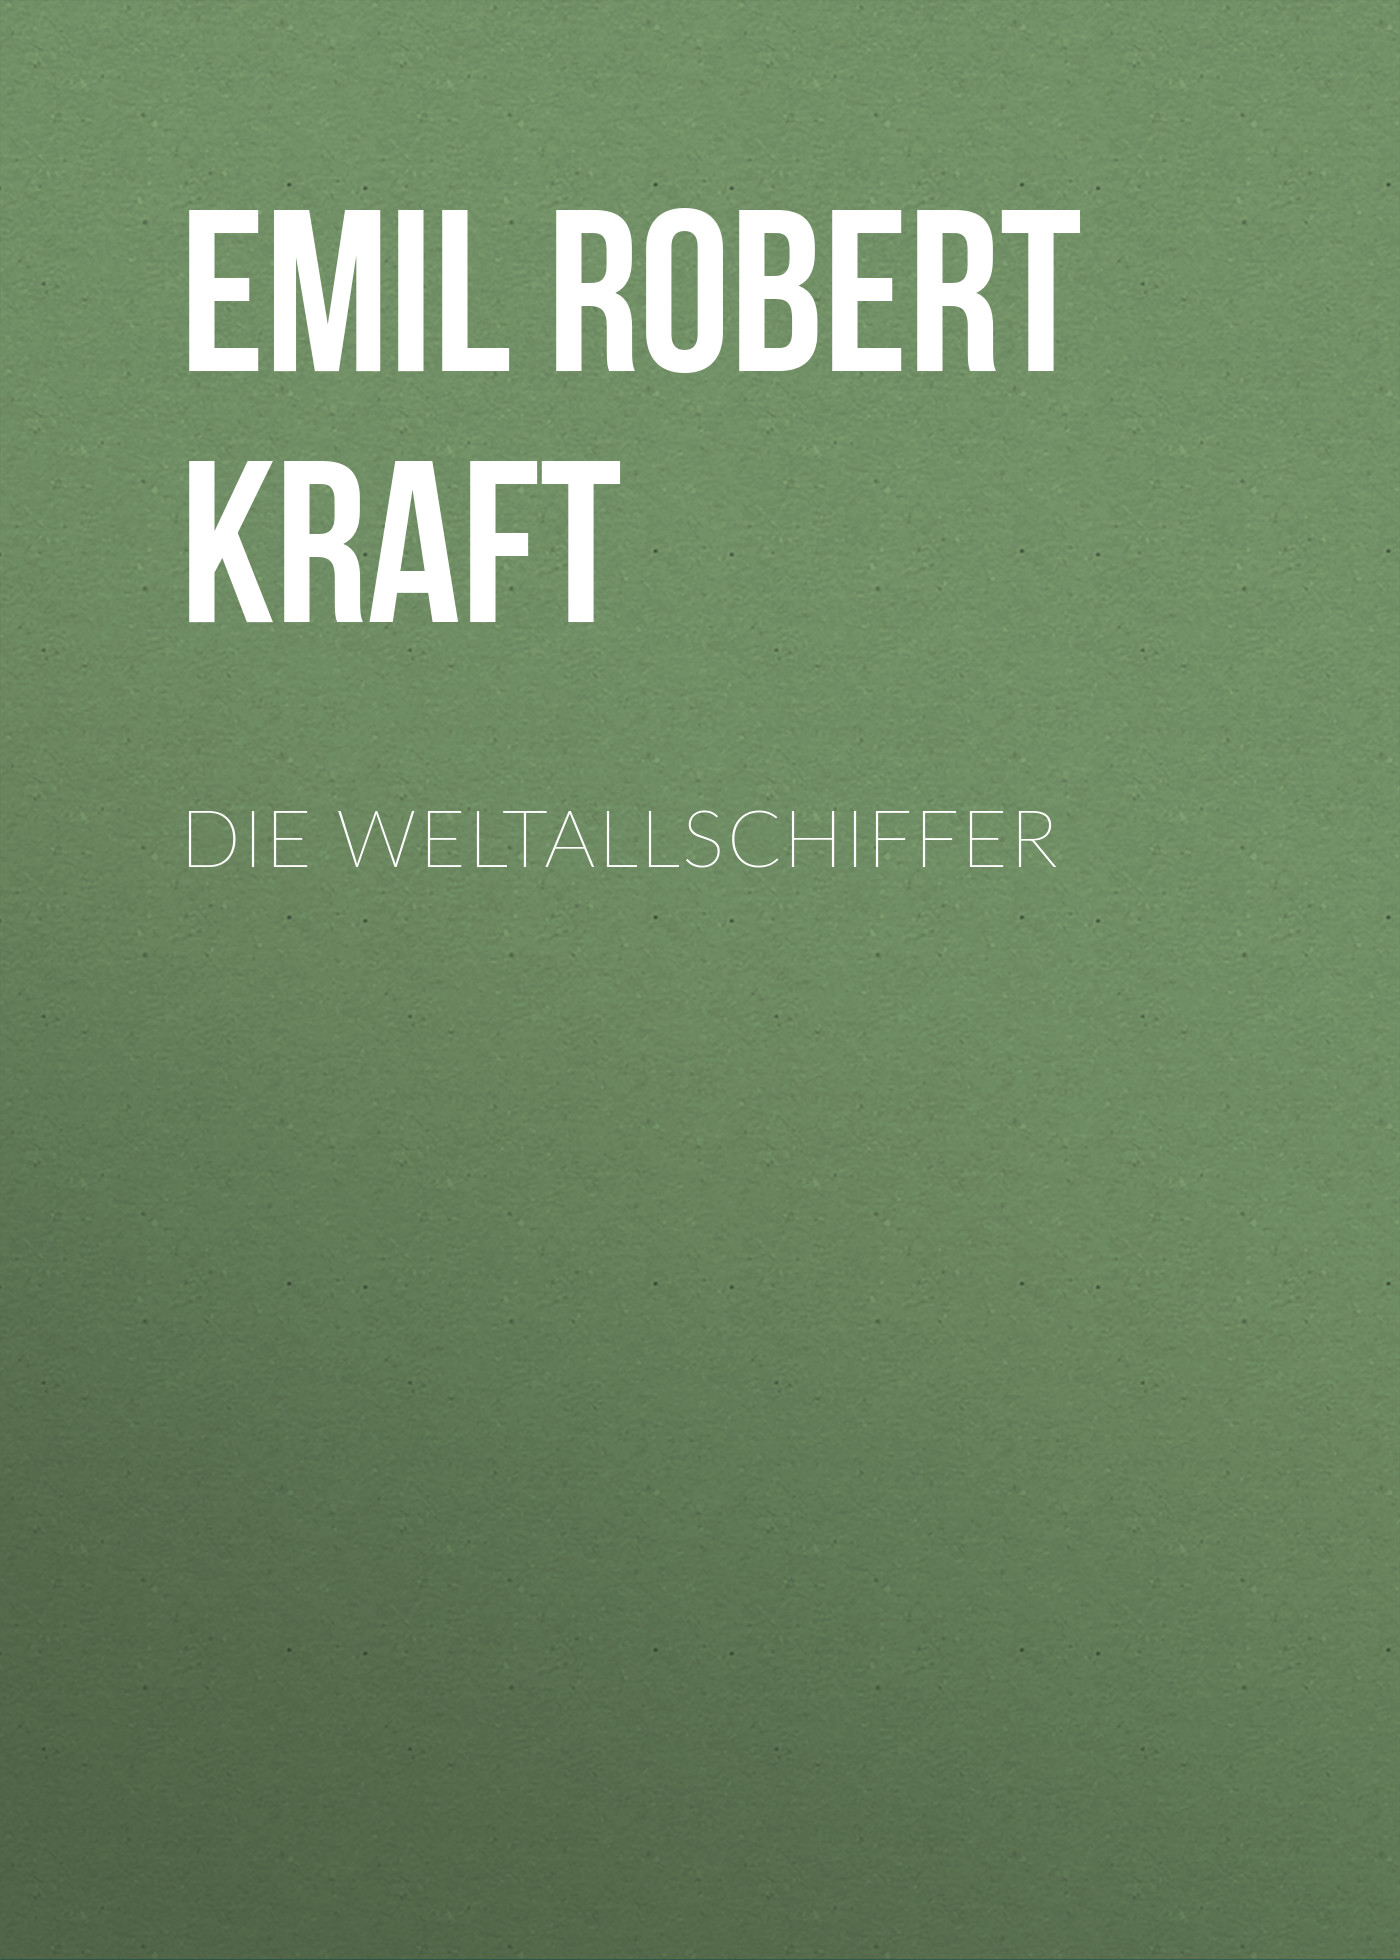 Книга Die Weltallschiffer из серии , созданная Emil Robert Kraft, может относится к жанру Зарубежная классика. Стоимость электронной книги Die Weltallschiffer с идентификатором 48633188 составляет 0 руб.